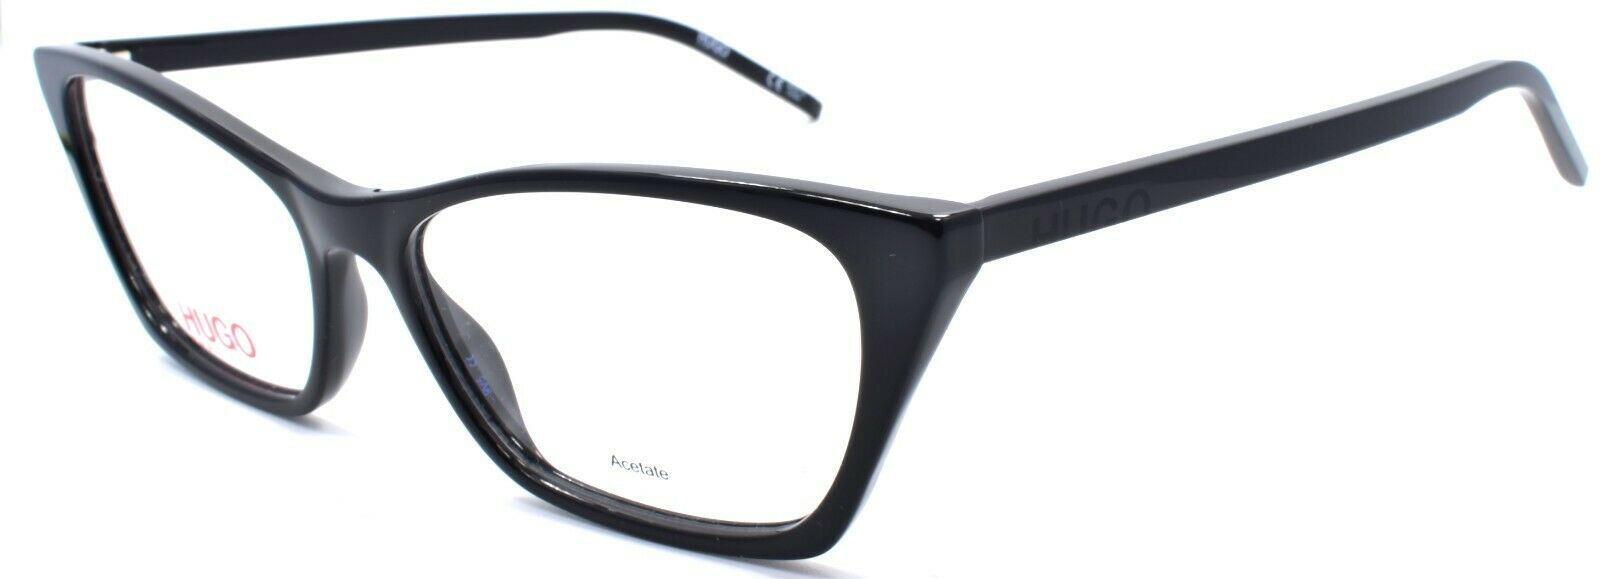 1-Hugo by Hugo Boss HG 1058 807 Women's Eyeglasses Frames Cat Eye 54-16-145 Black-716736192239-IKSpecs